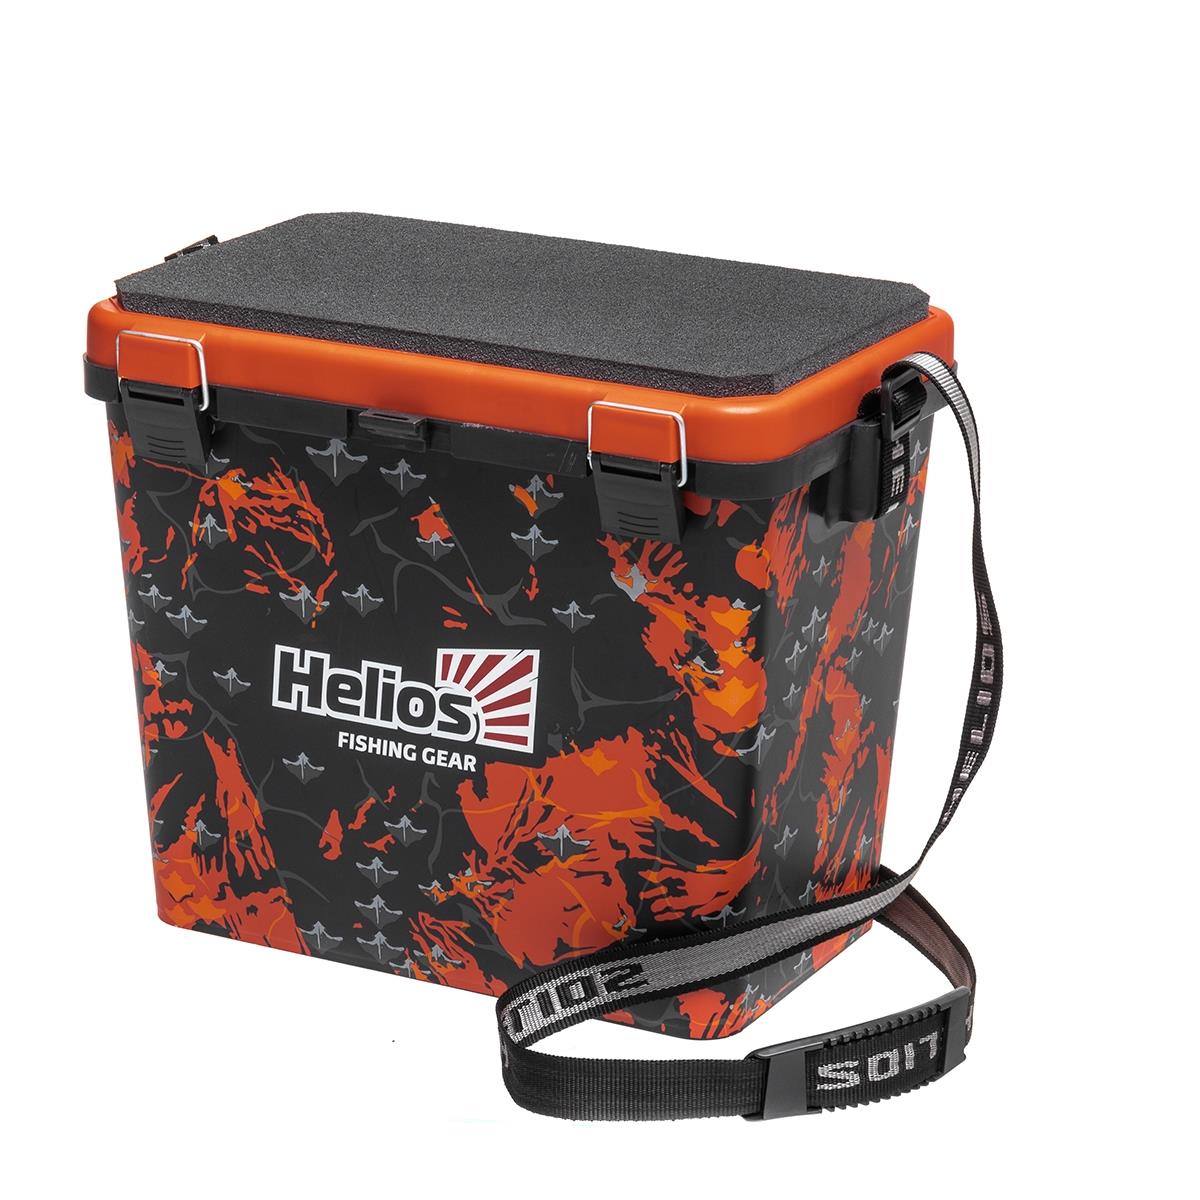 Ящик рыболовный зимний SHARK односекционный оранжевый Helios джип радиоуправляемый monster 1 16 эффект дыма световые эффекты работает от аккумулятора оранжевый